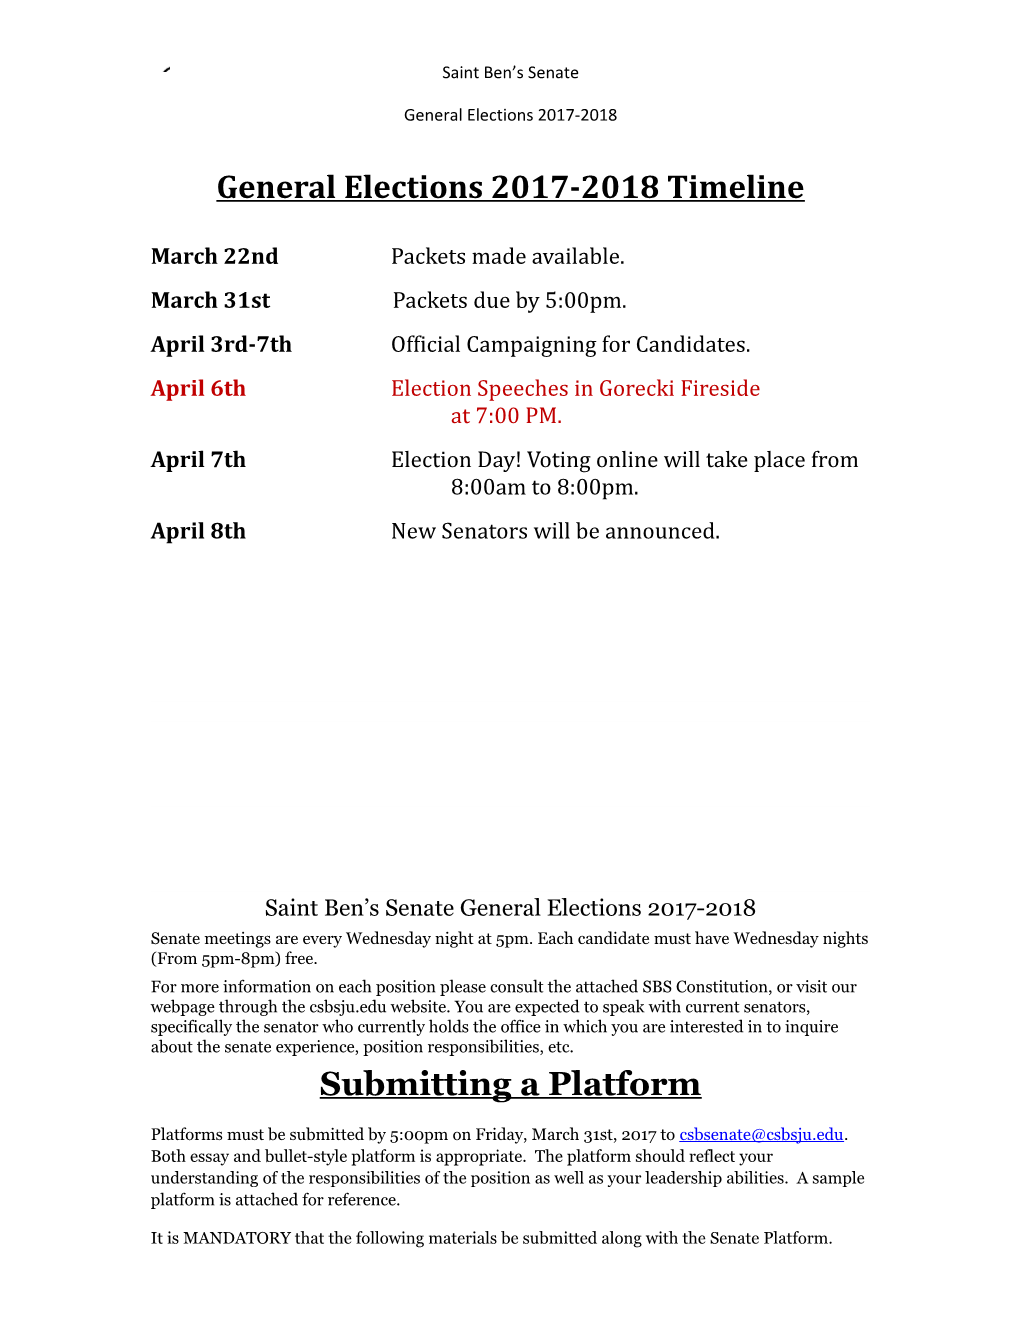 General Elections 2017-2018 Timeline